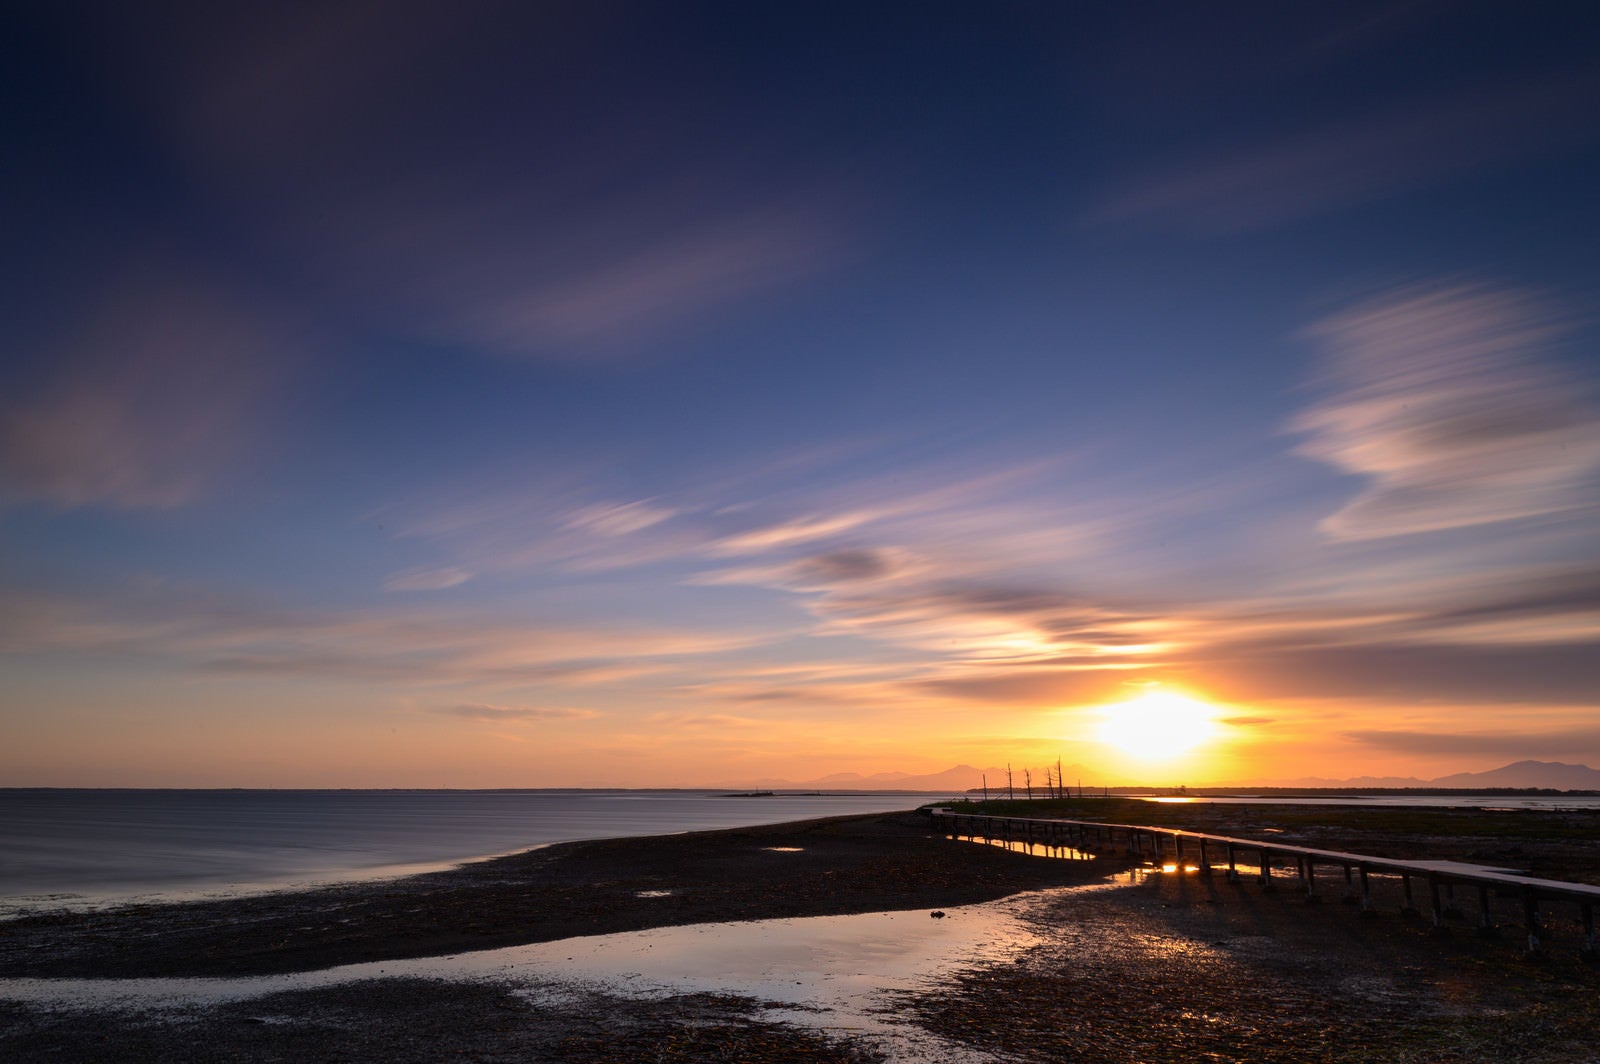 「野付半島の沈む夕日と桟橋」の写真